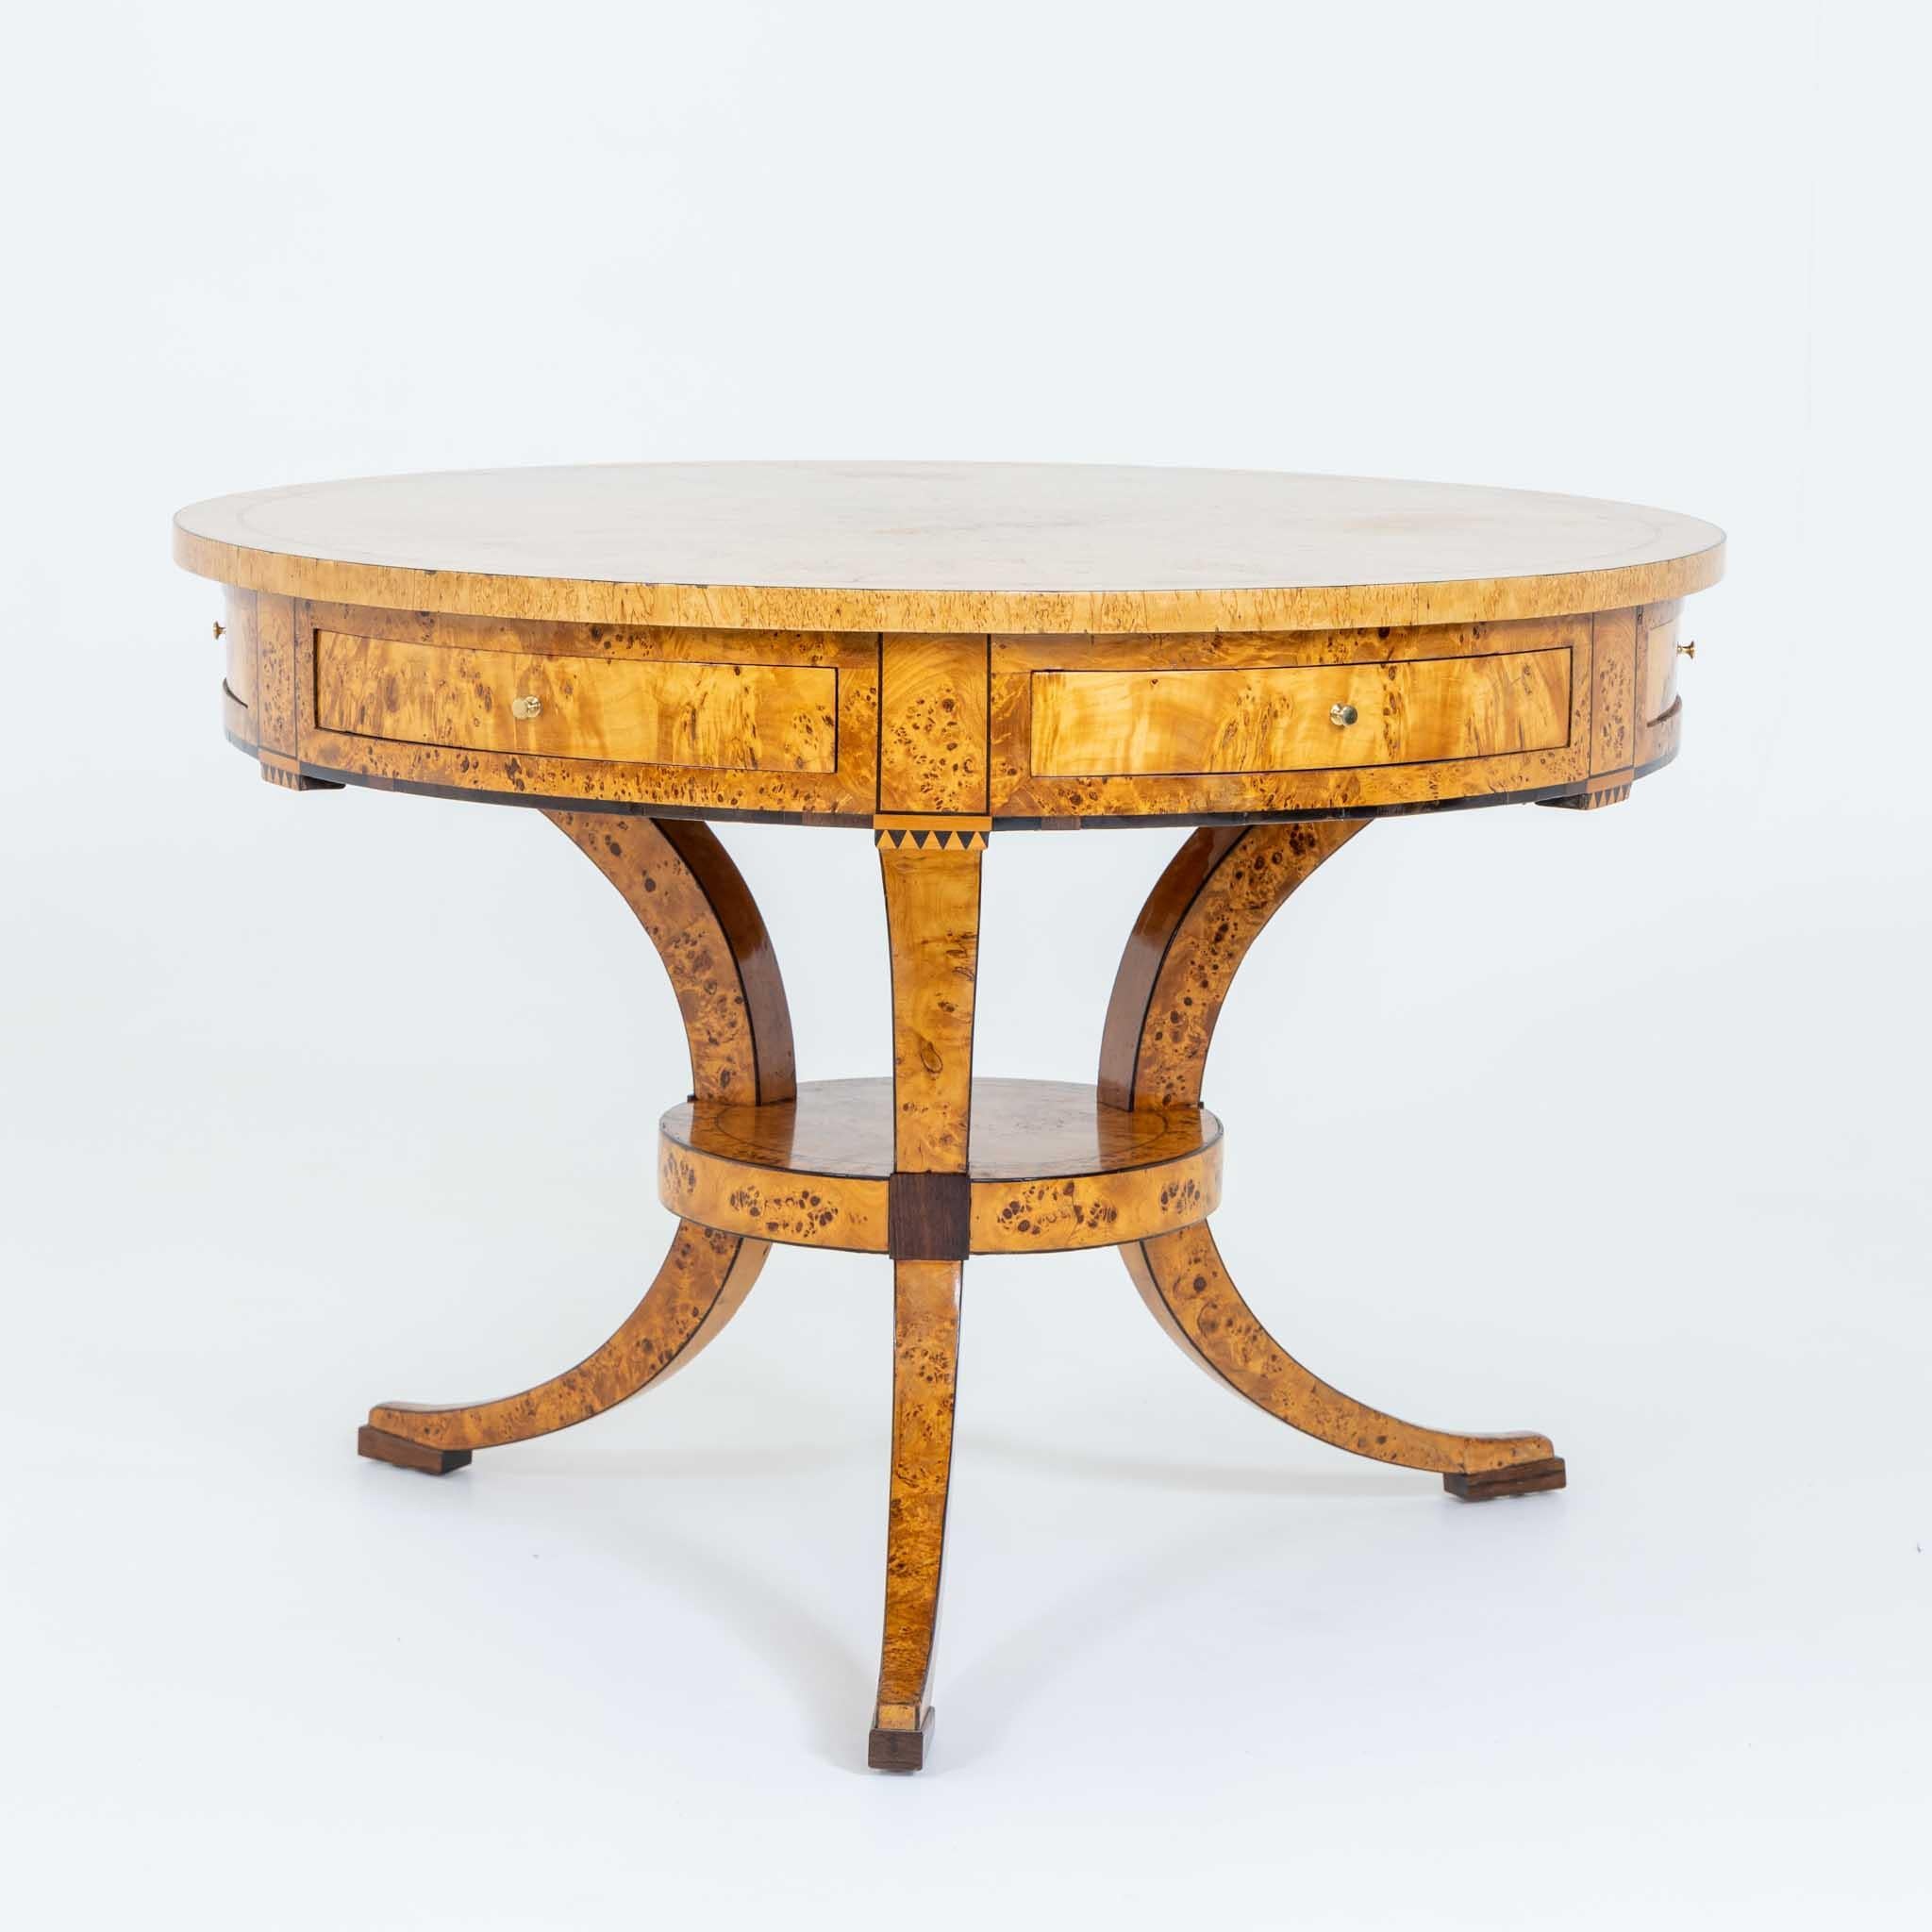 Biedermeier-Spieltisch aus Birke, Baltische Staaten, frühes 19. Jahrhundert (Poliert)